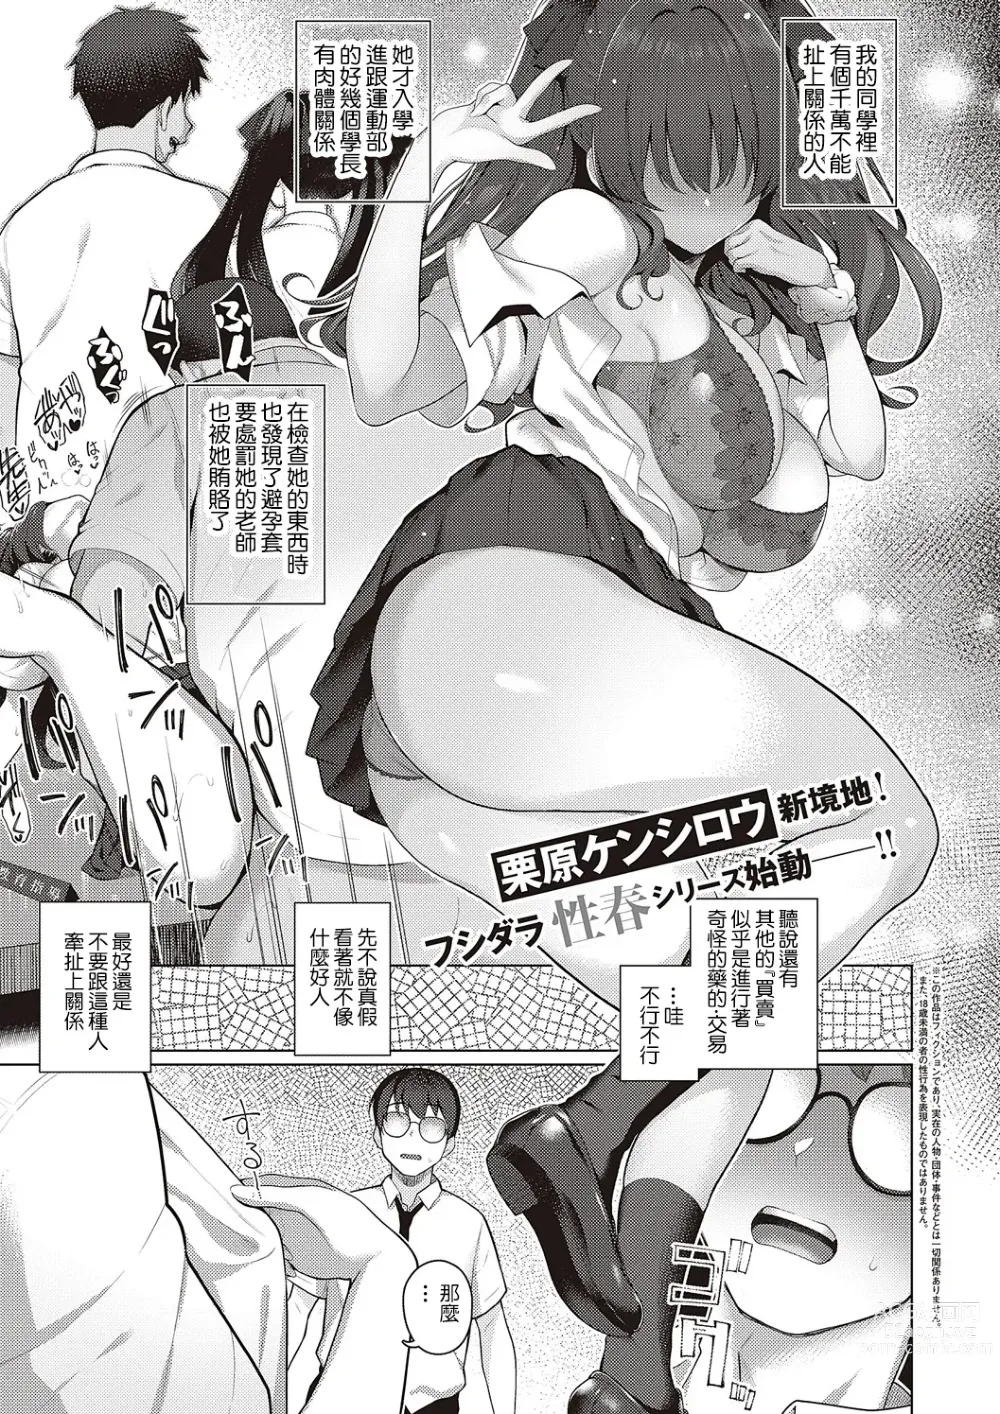 Page 1 of manga Majime to Fumajime